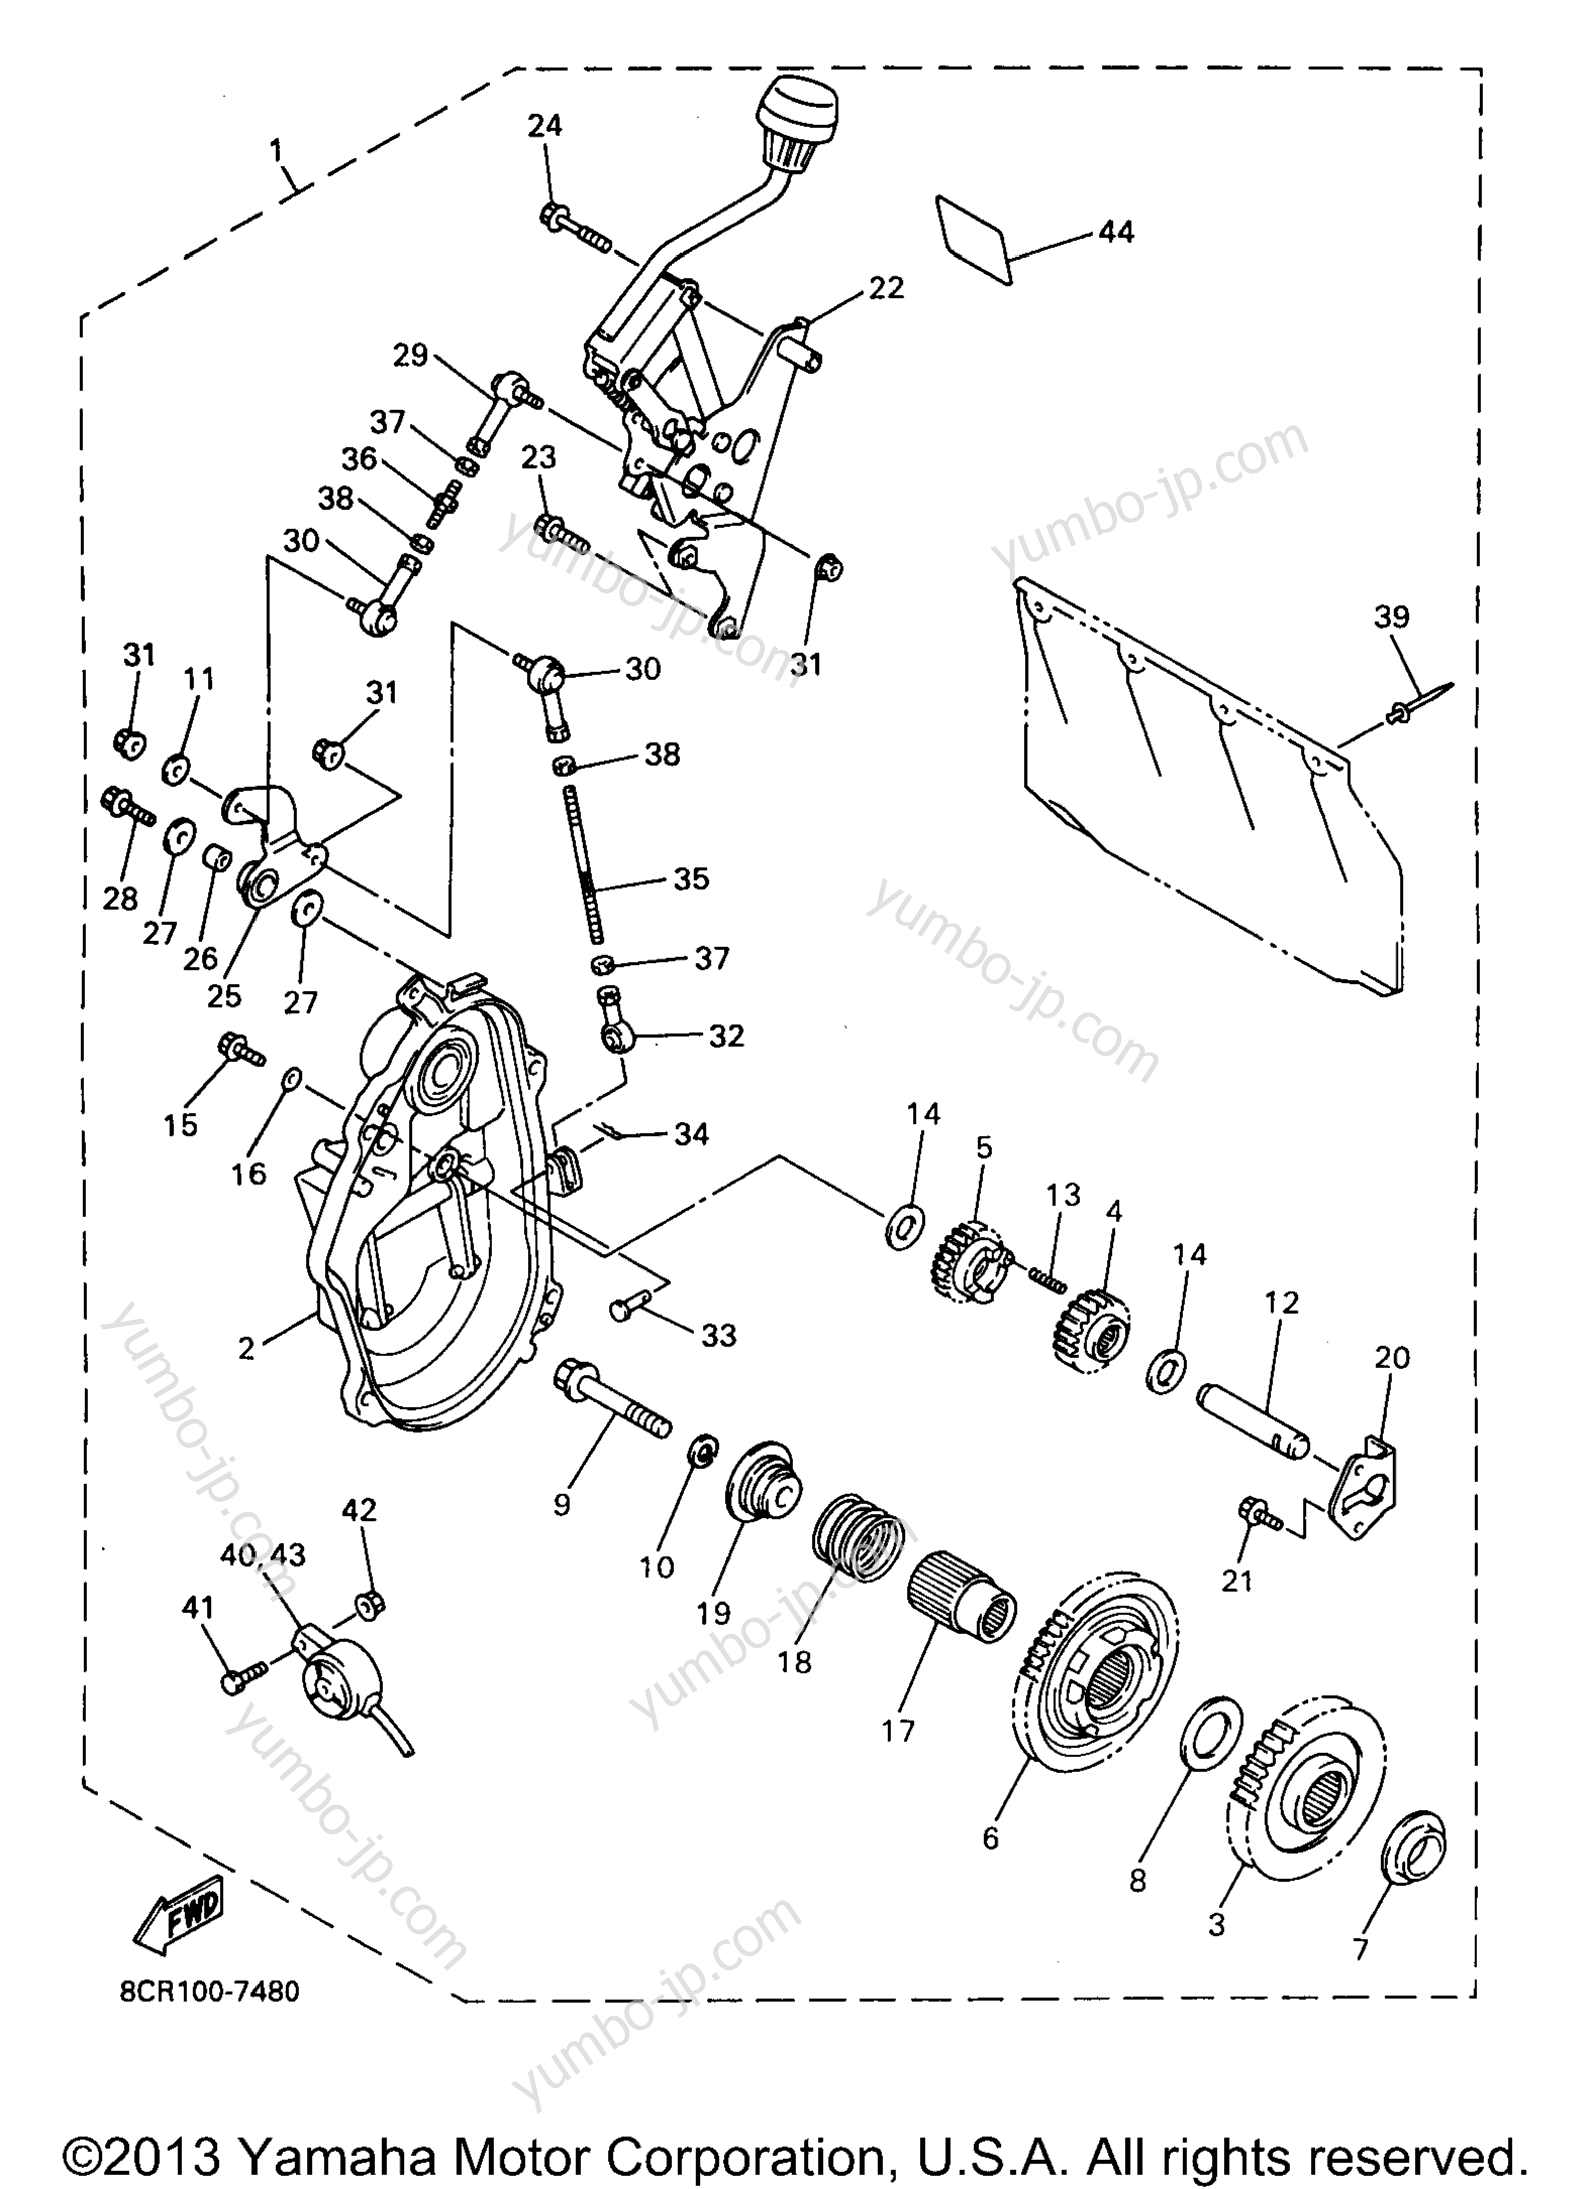 Alternate Reverse Gear for snowmobiles YAMAHA VMAX 600 XTC (ELEC START) (VX600XTCEA) 1997 year